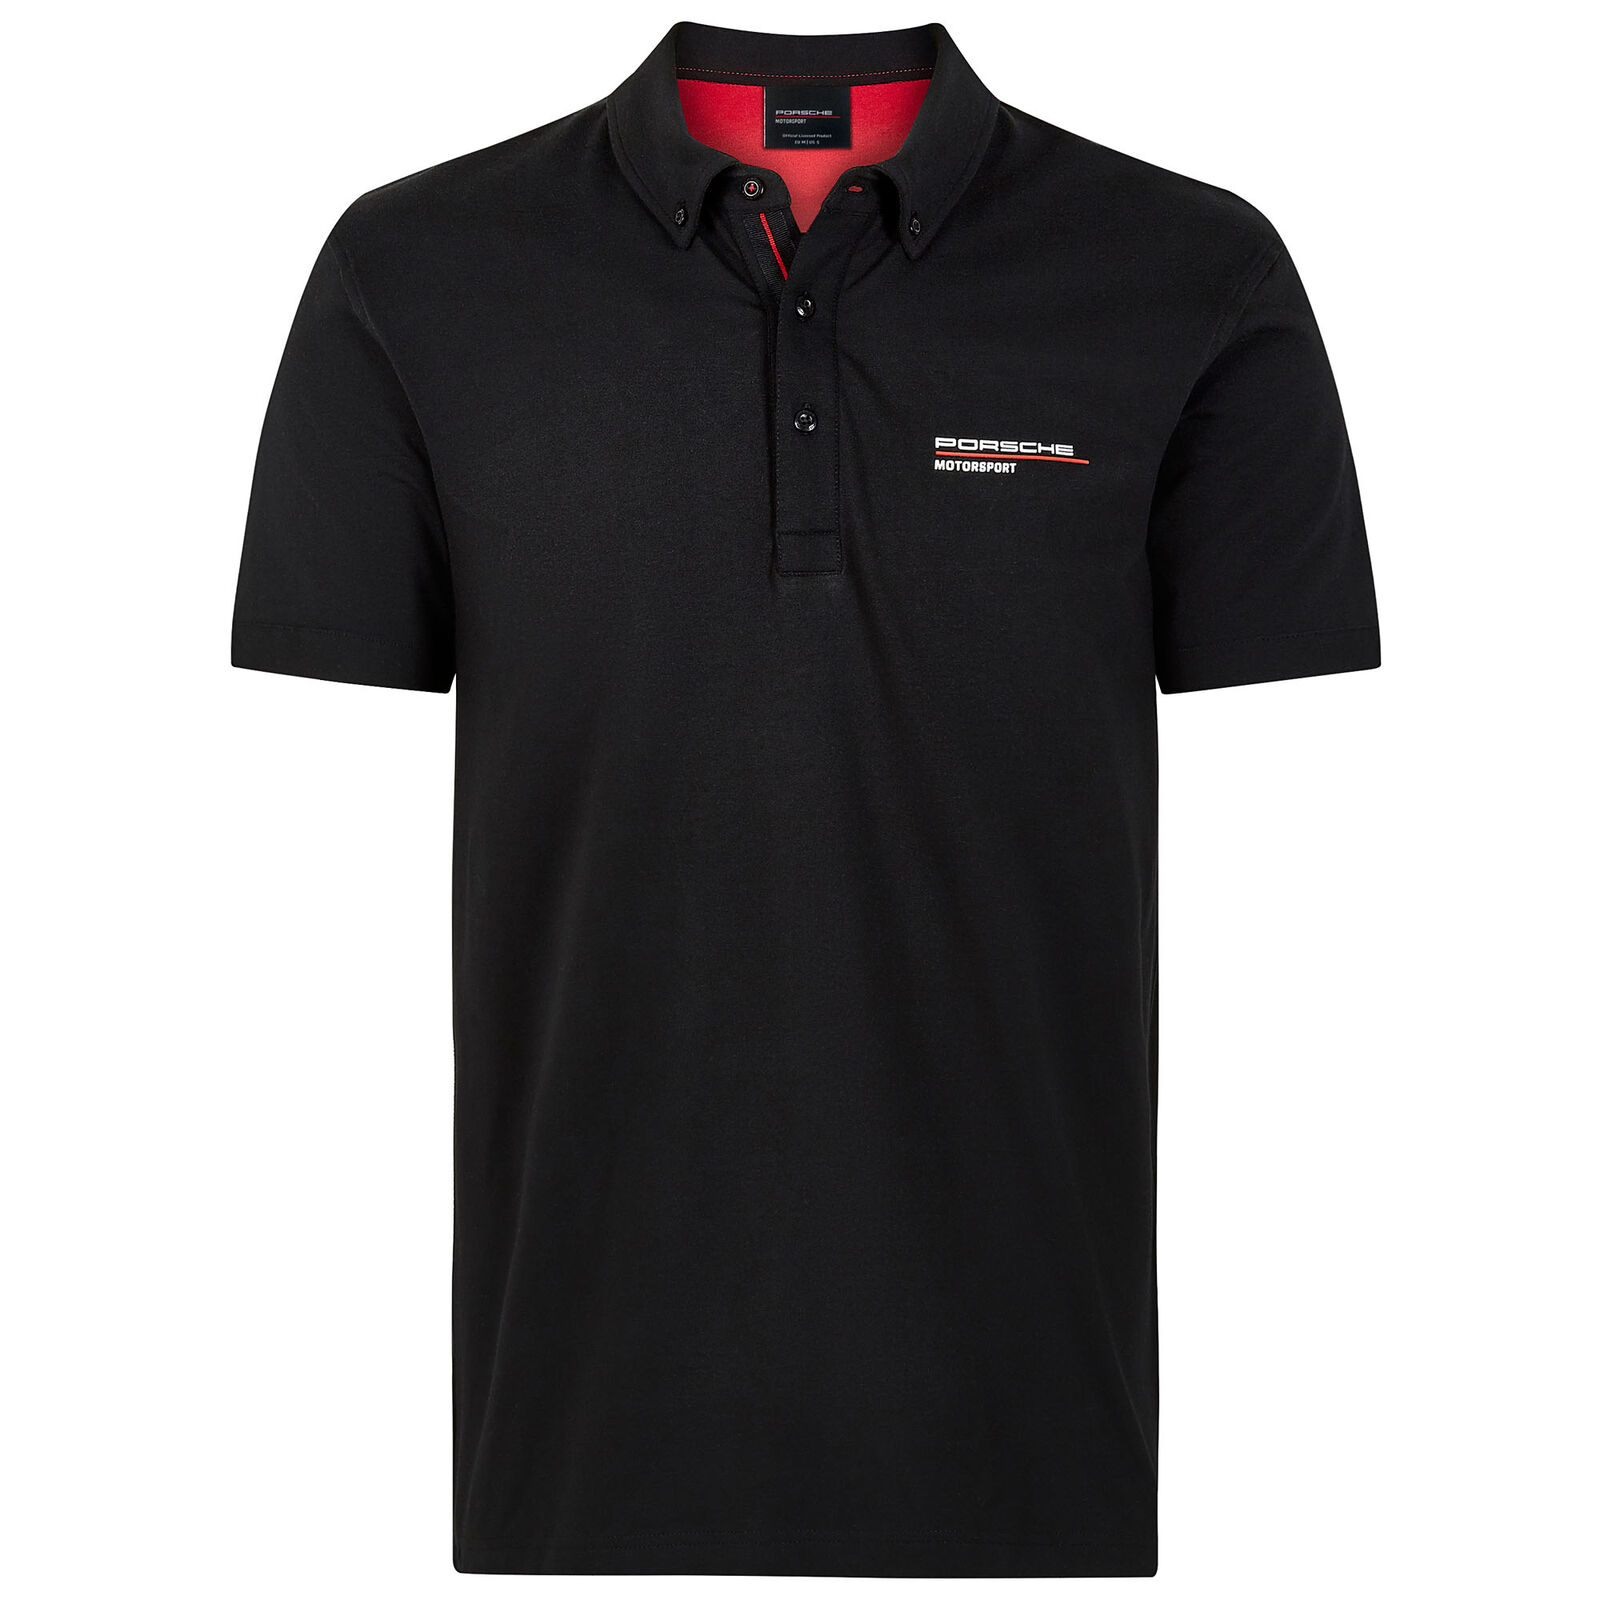 ★送料無料★Porsche Team Polo Shirt black ポルシェ オフィシャル ポロシャツ ブラック 半袖